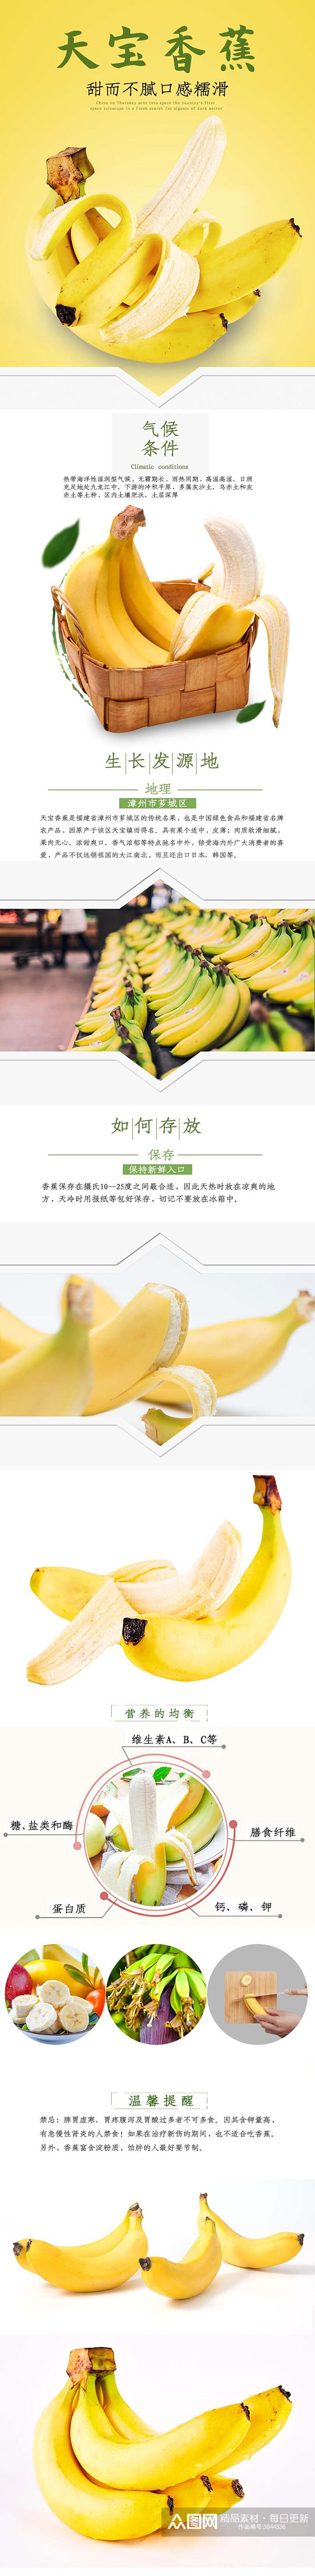 天宝香蕉水果手机版详情页素材